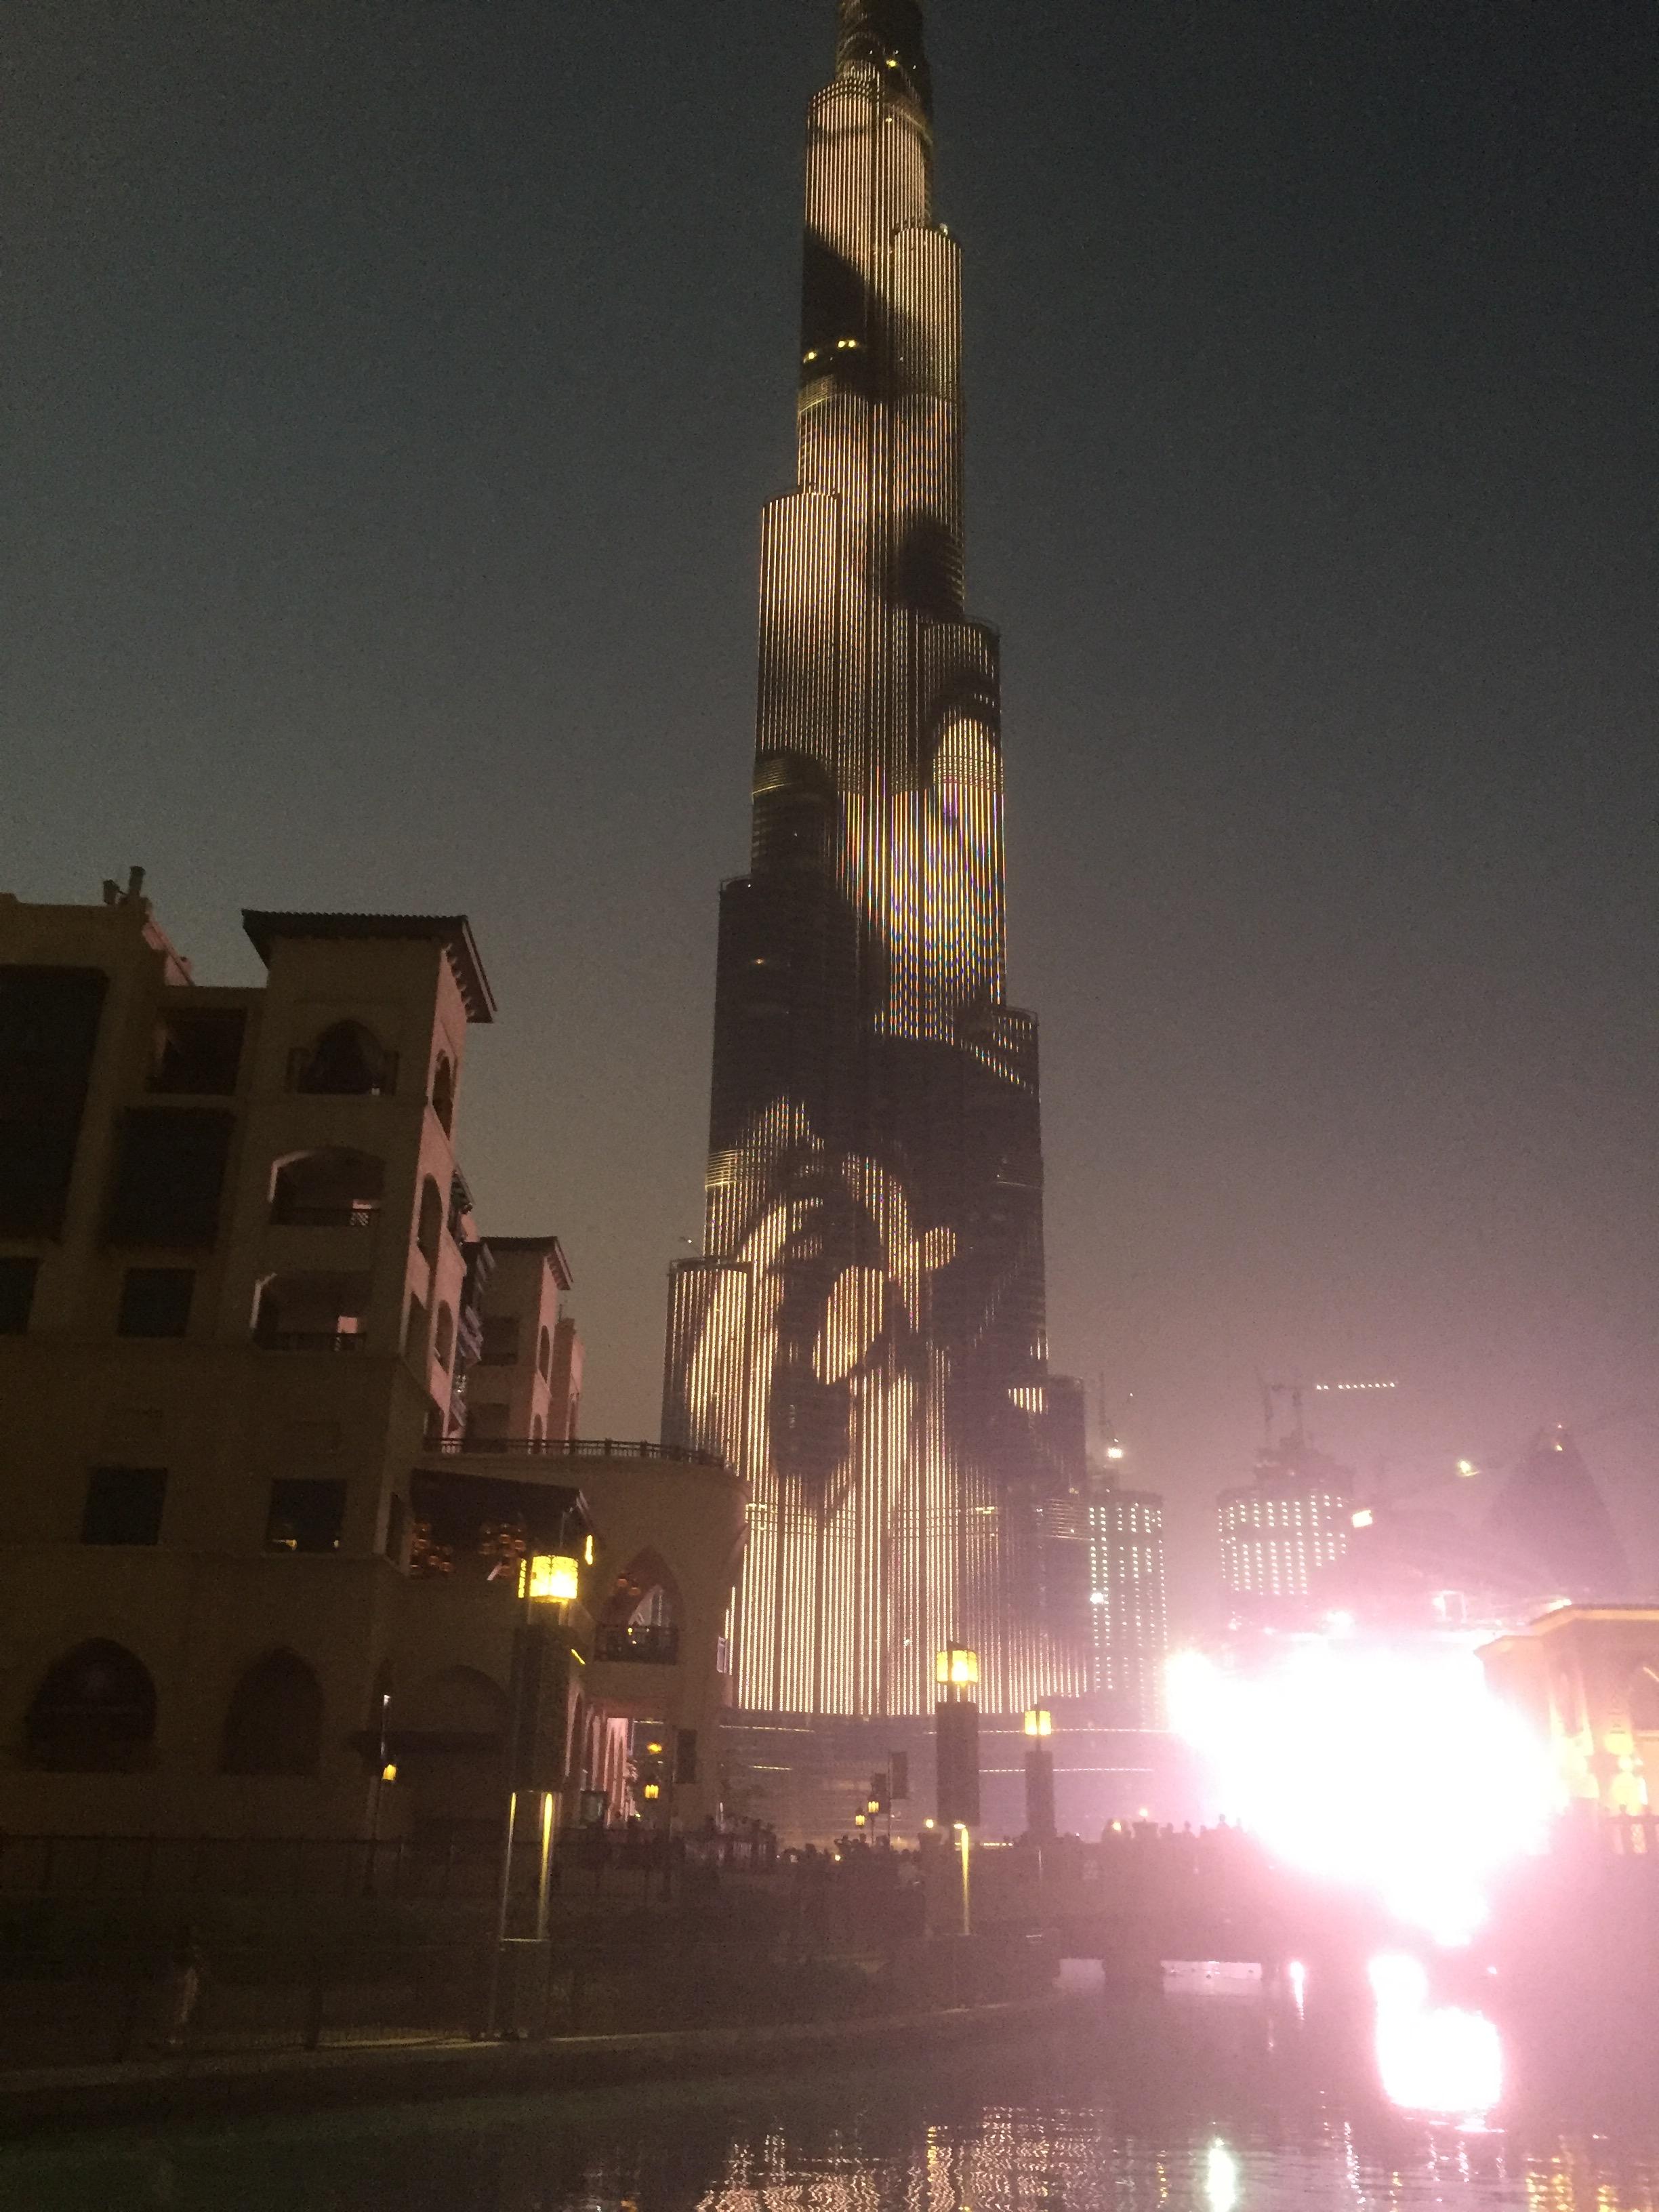 Son et lumière sur Burj Khalifa